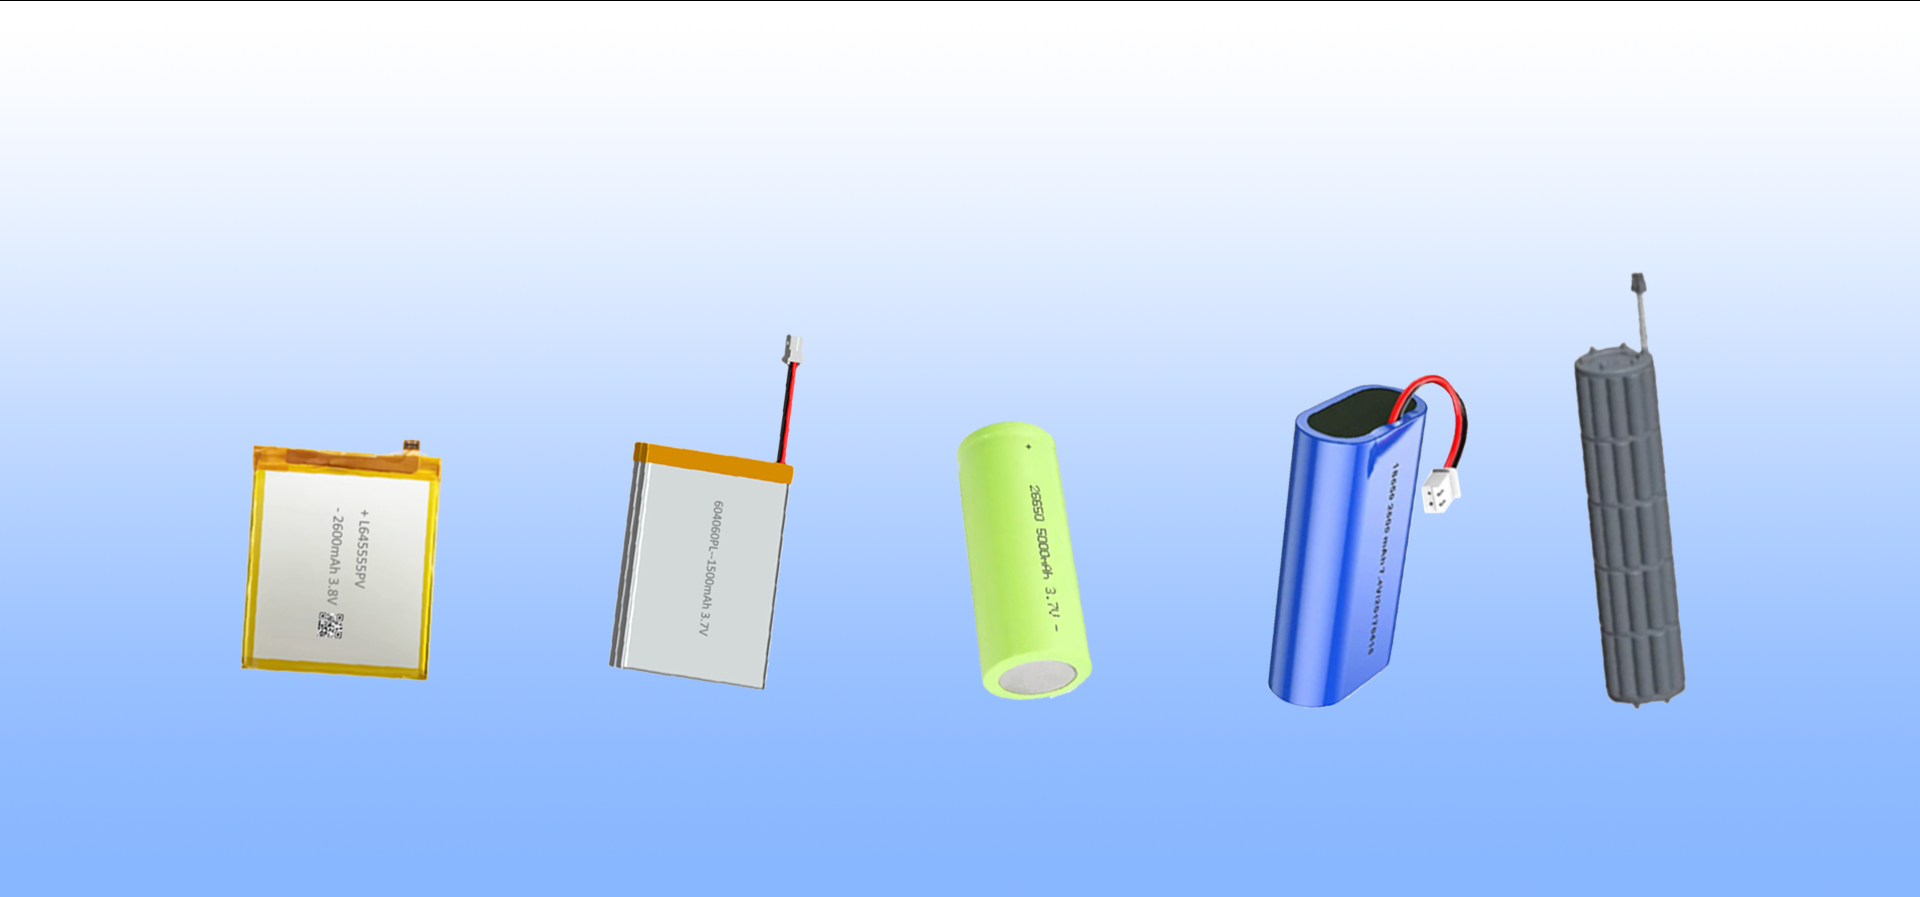 Battery Pack Design